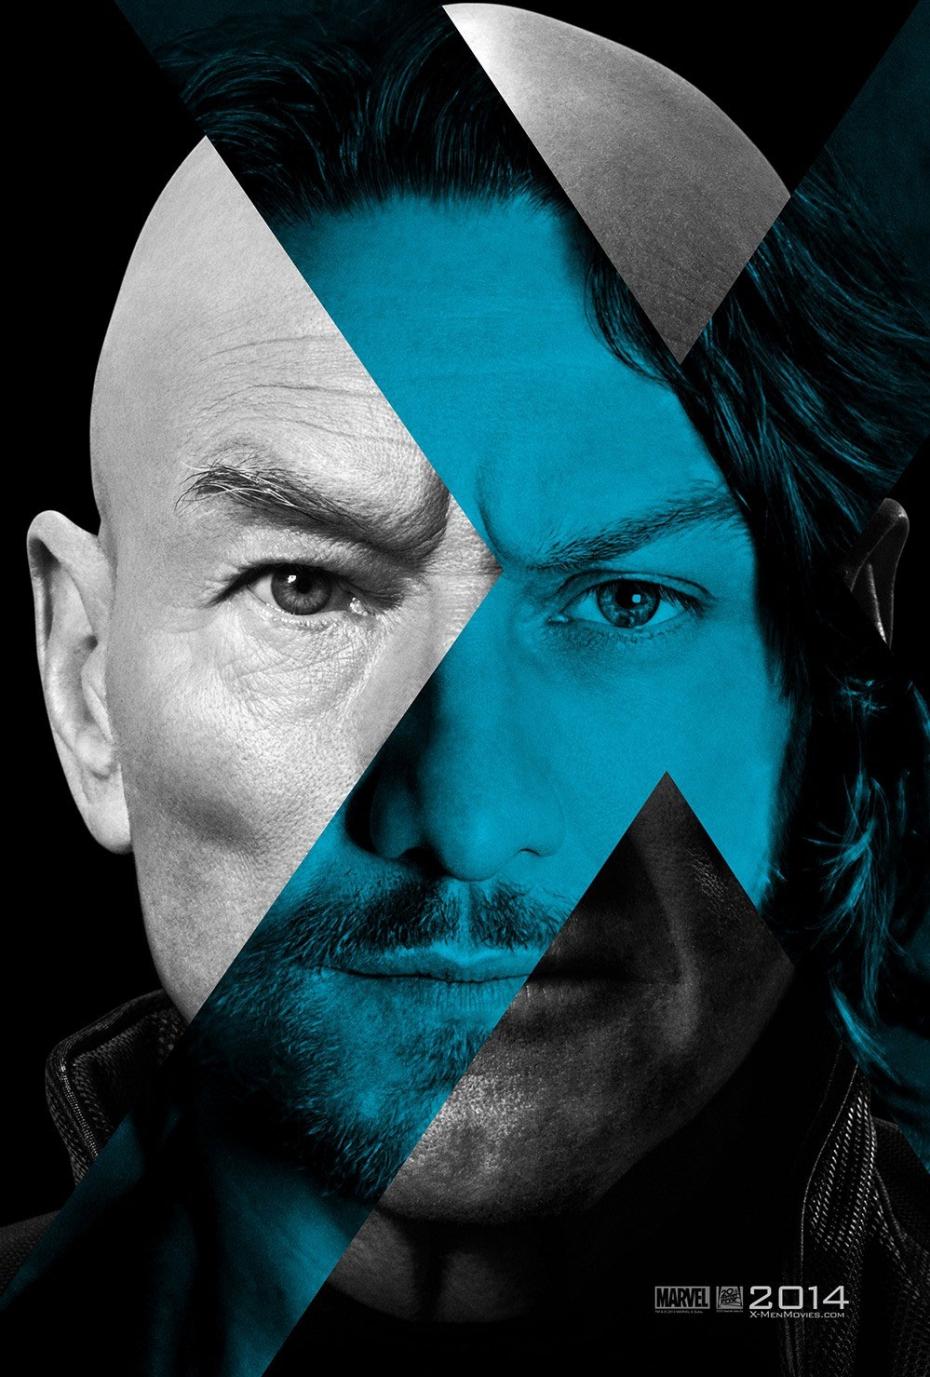 X-Men Days of Future Past : 2 affiches officielles + 1 affiche fan made #2